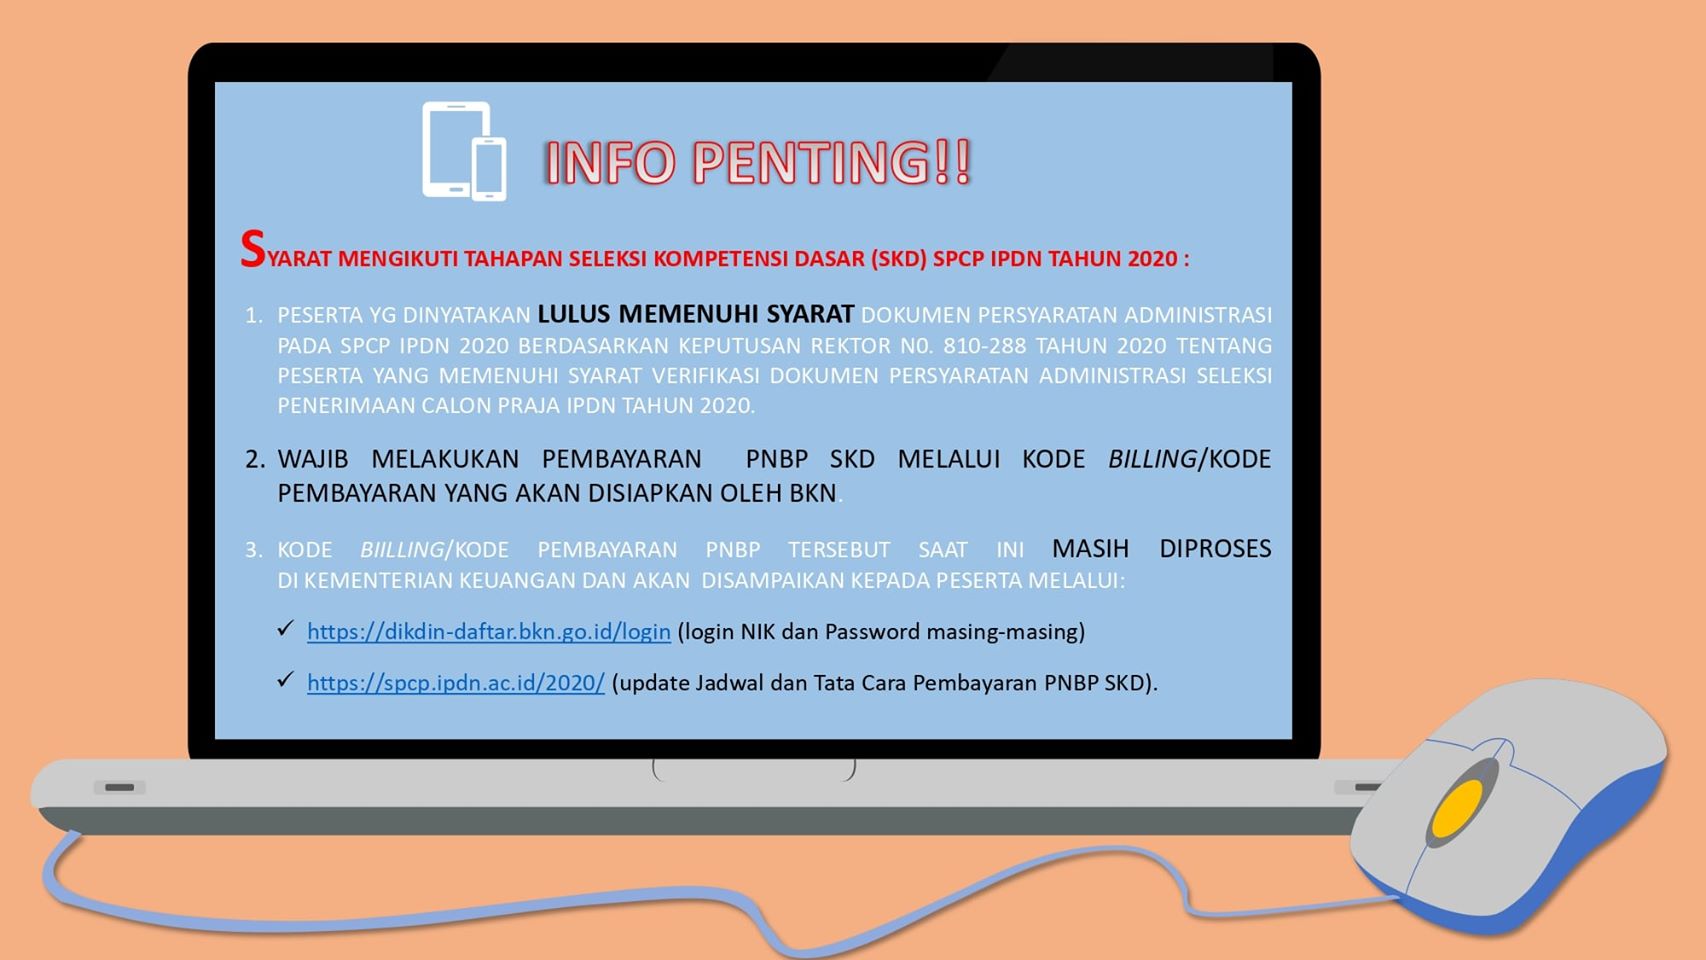 Peserta LULUS Persyaratan Administrasi Seleksi Penerimaan Capra IPDN Tahun 2020 Provinsi Sulawesi Utara